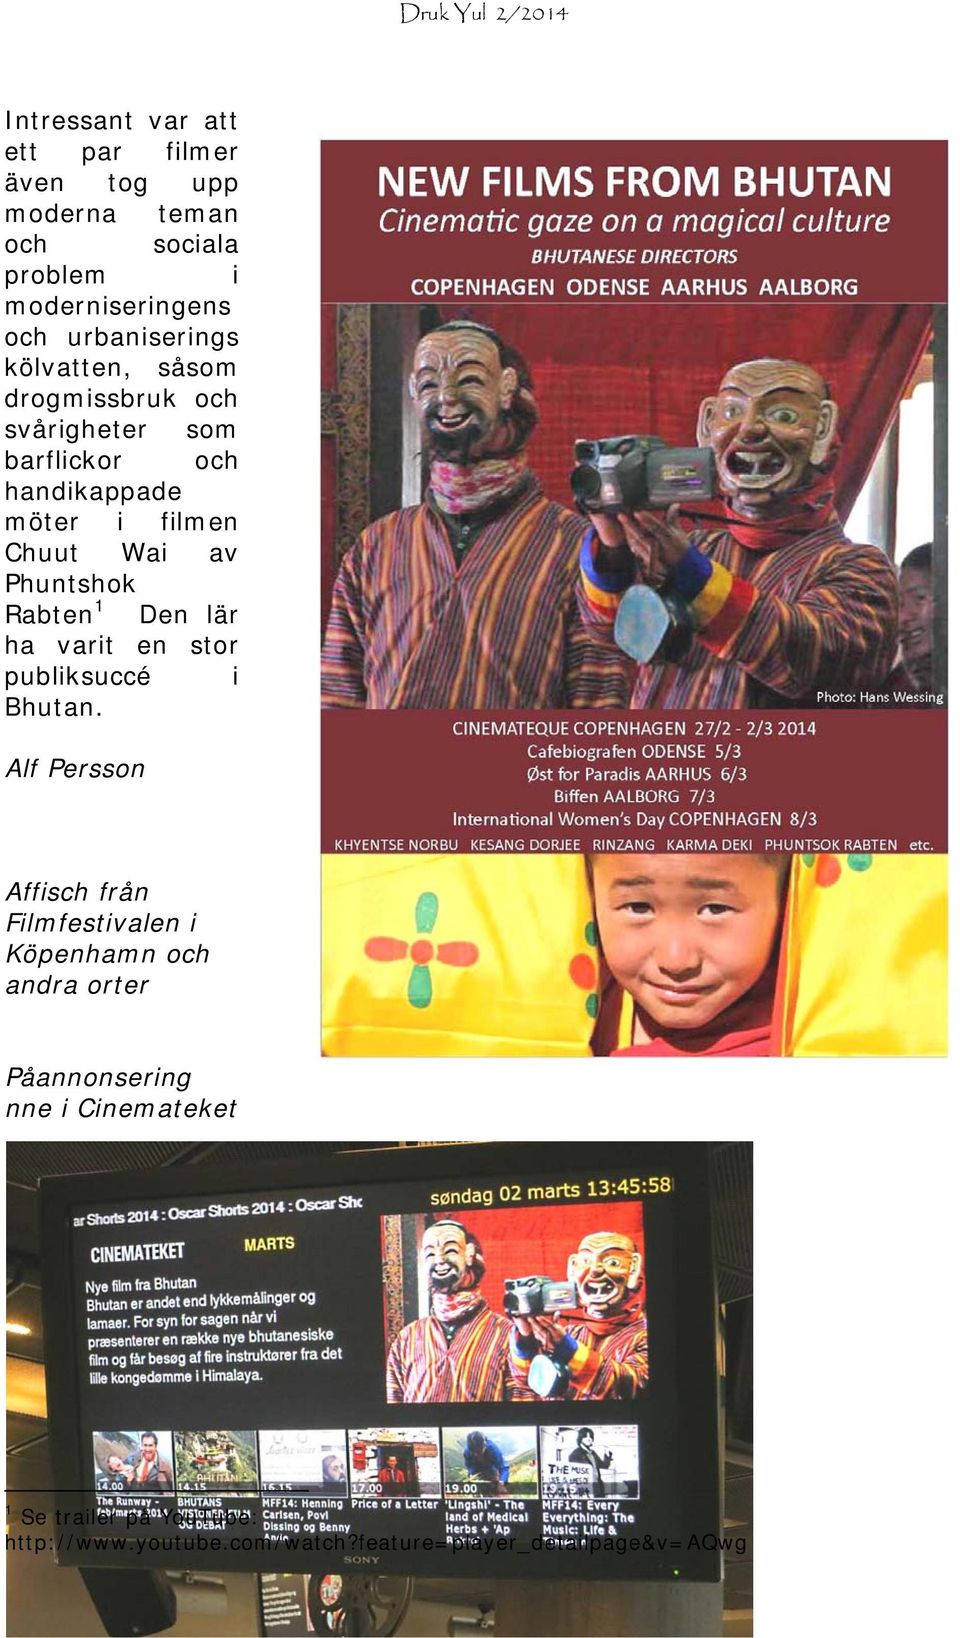 Rabten 1 Den lär ha varit en stor publiksuccé i Bhutan.